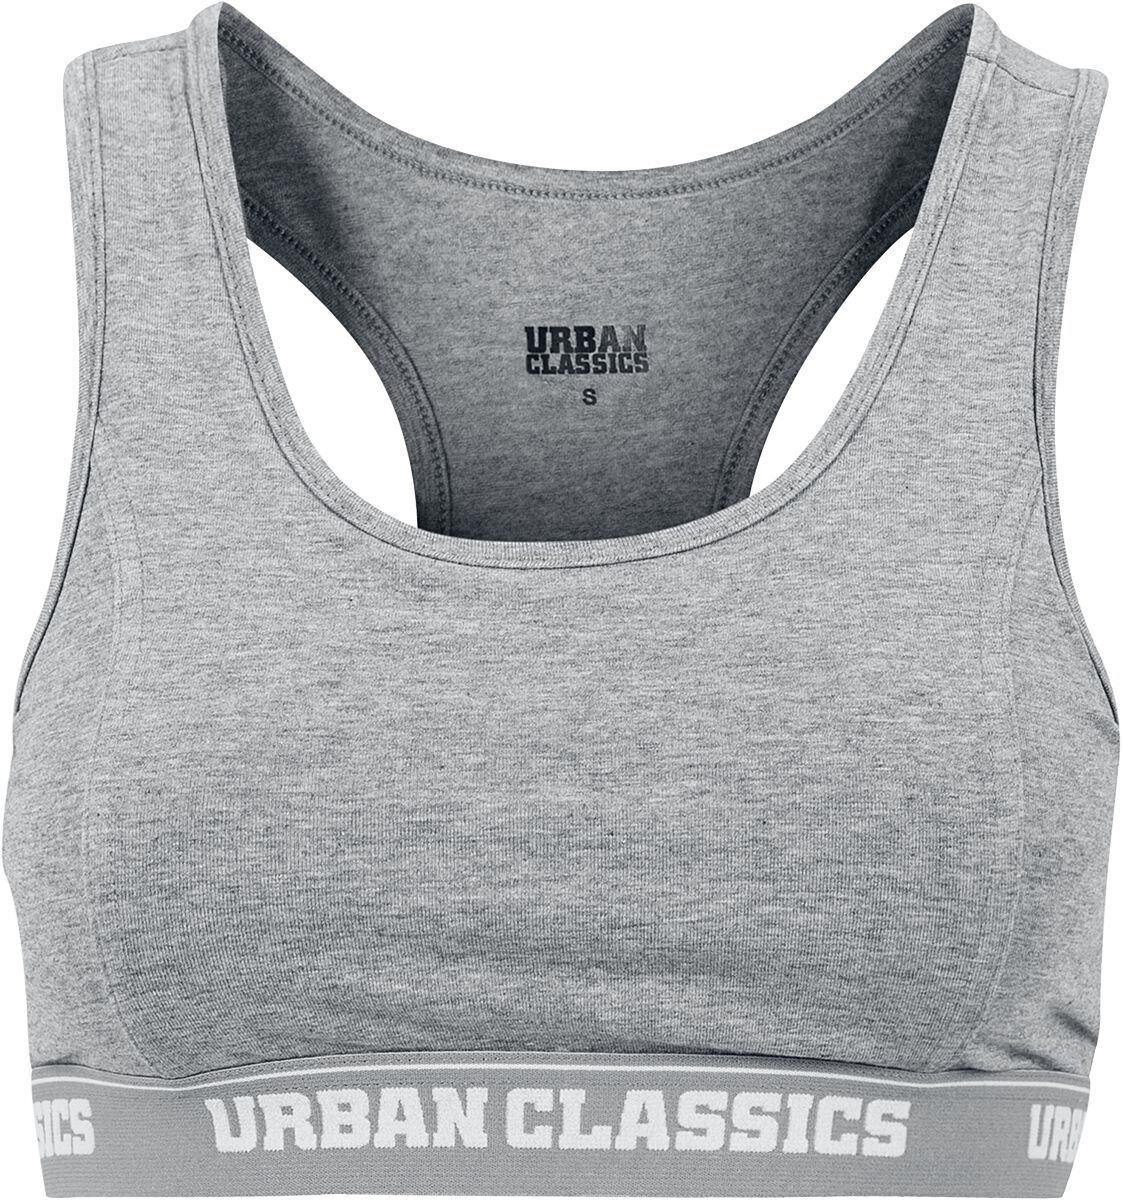 Bustier de Urban Classics - Brassière Logo - XS à S - pour Femme - gris chiné